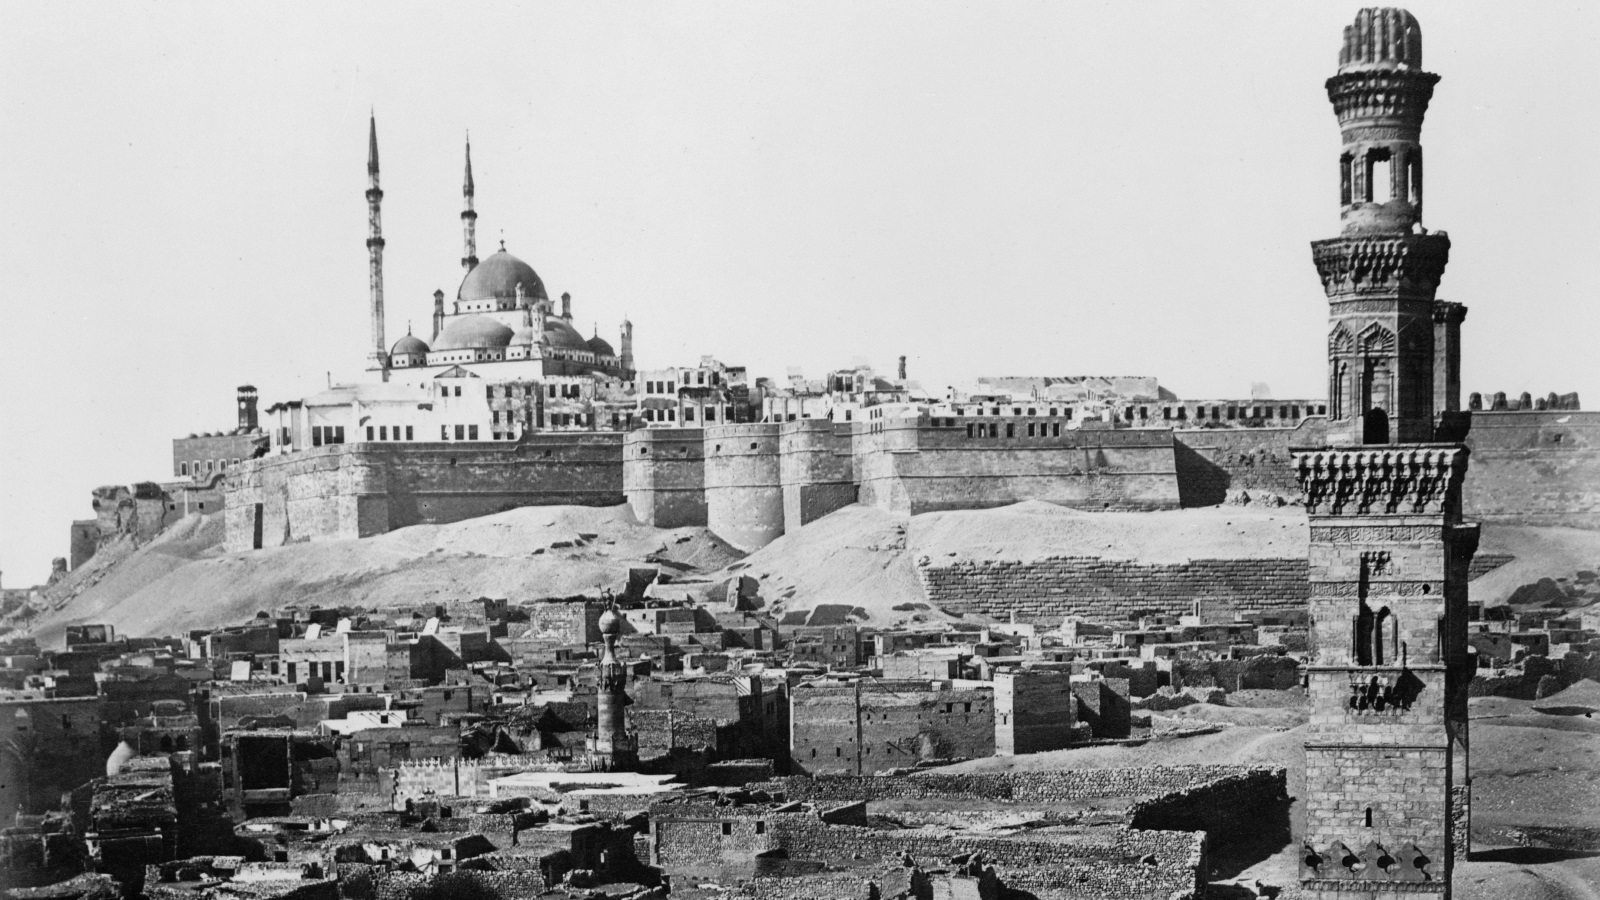 كان صلاح الدين الأيوبي يحمل مشروعا دفاعيا في وجه الهجمة الصليبية، فكانت من هنا أهمية بناء وتشييد قلعة الجبل والأسوار في العاصمة المصرية 